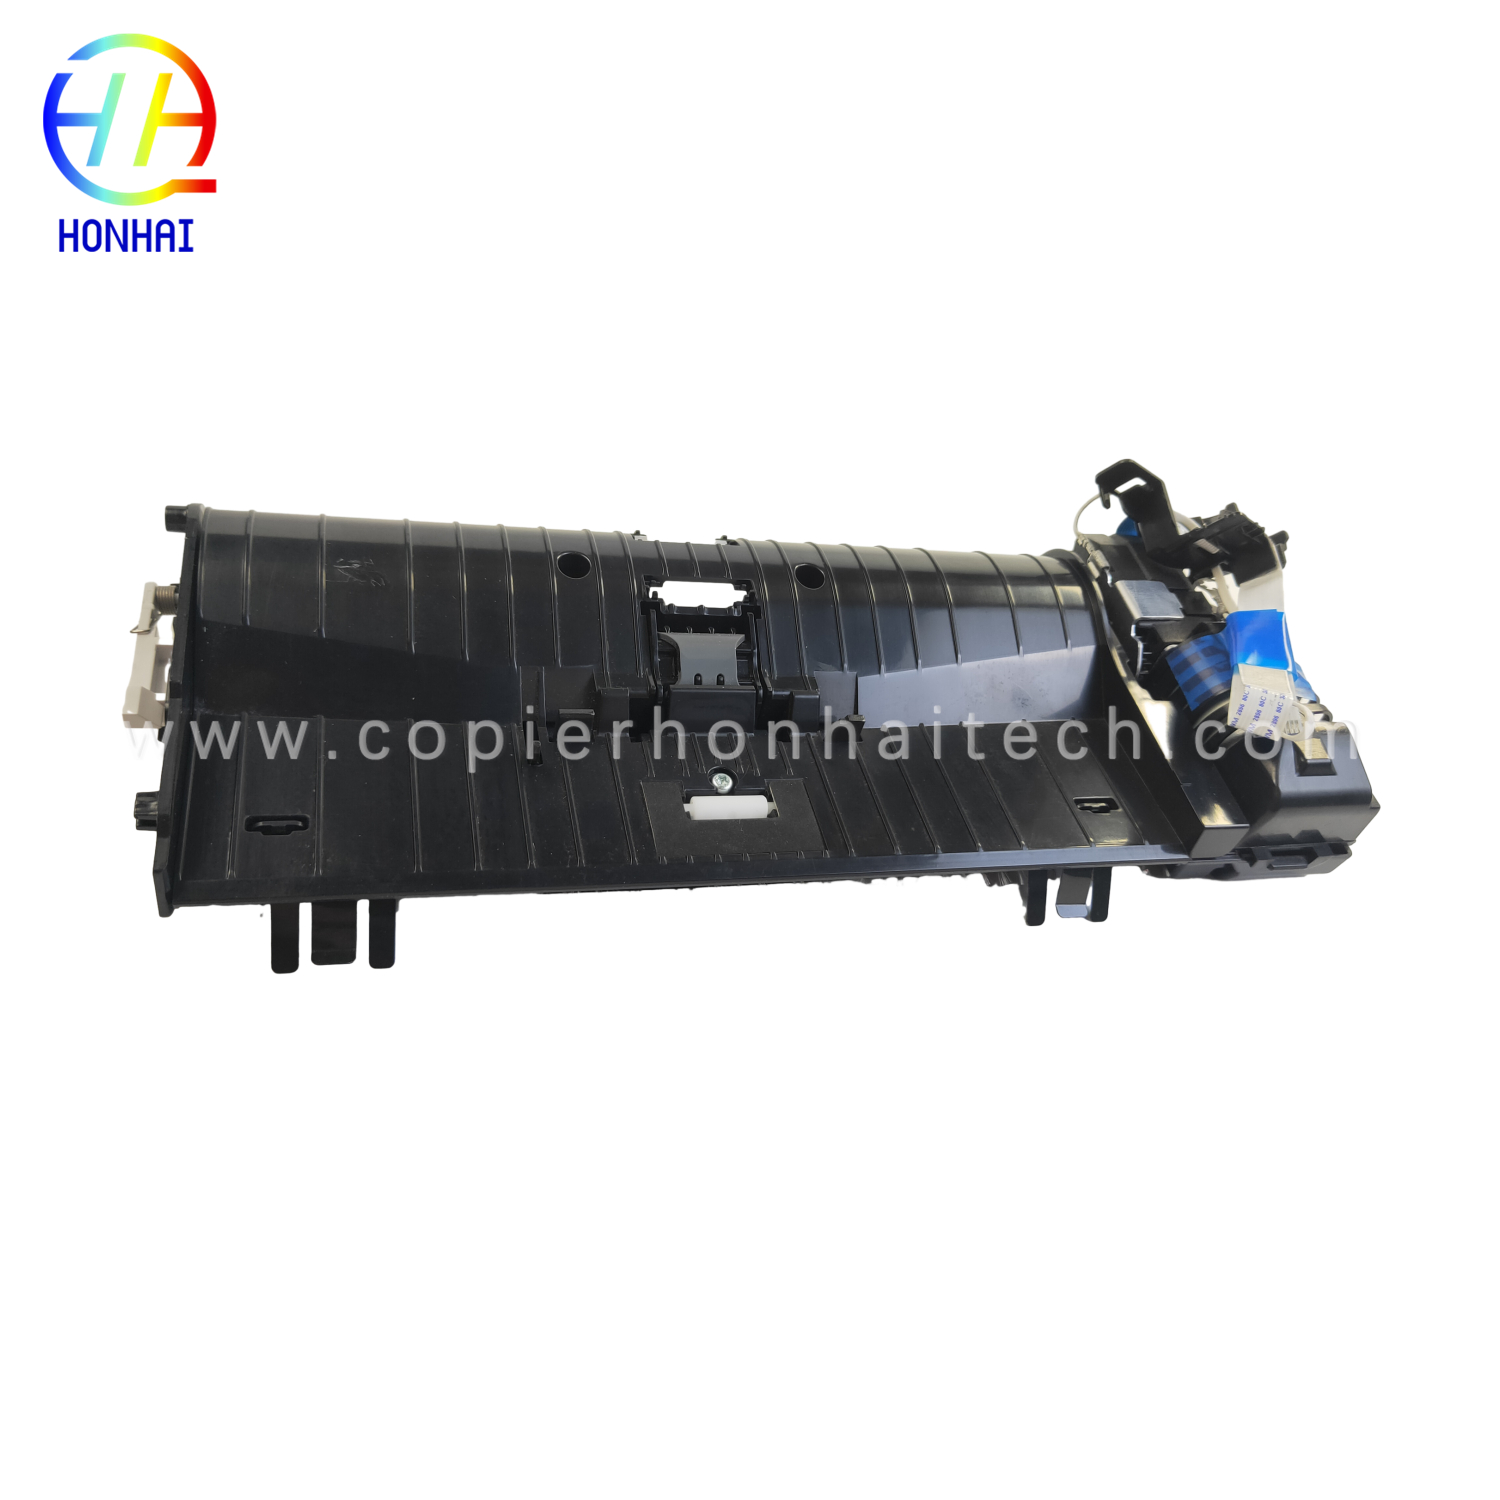 https://www.copierhonhaitech.com/original-adf-assemblies-for-hp-color-laserjet-m277-product/